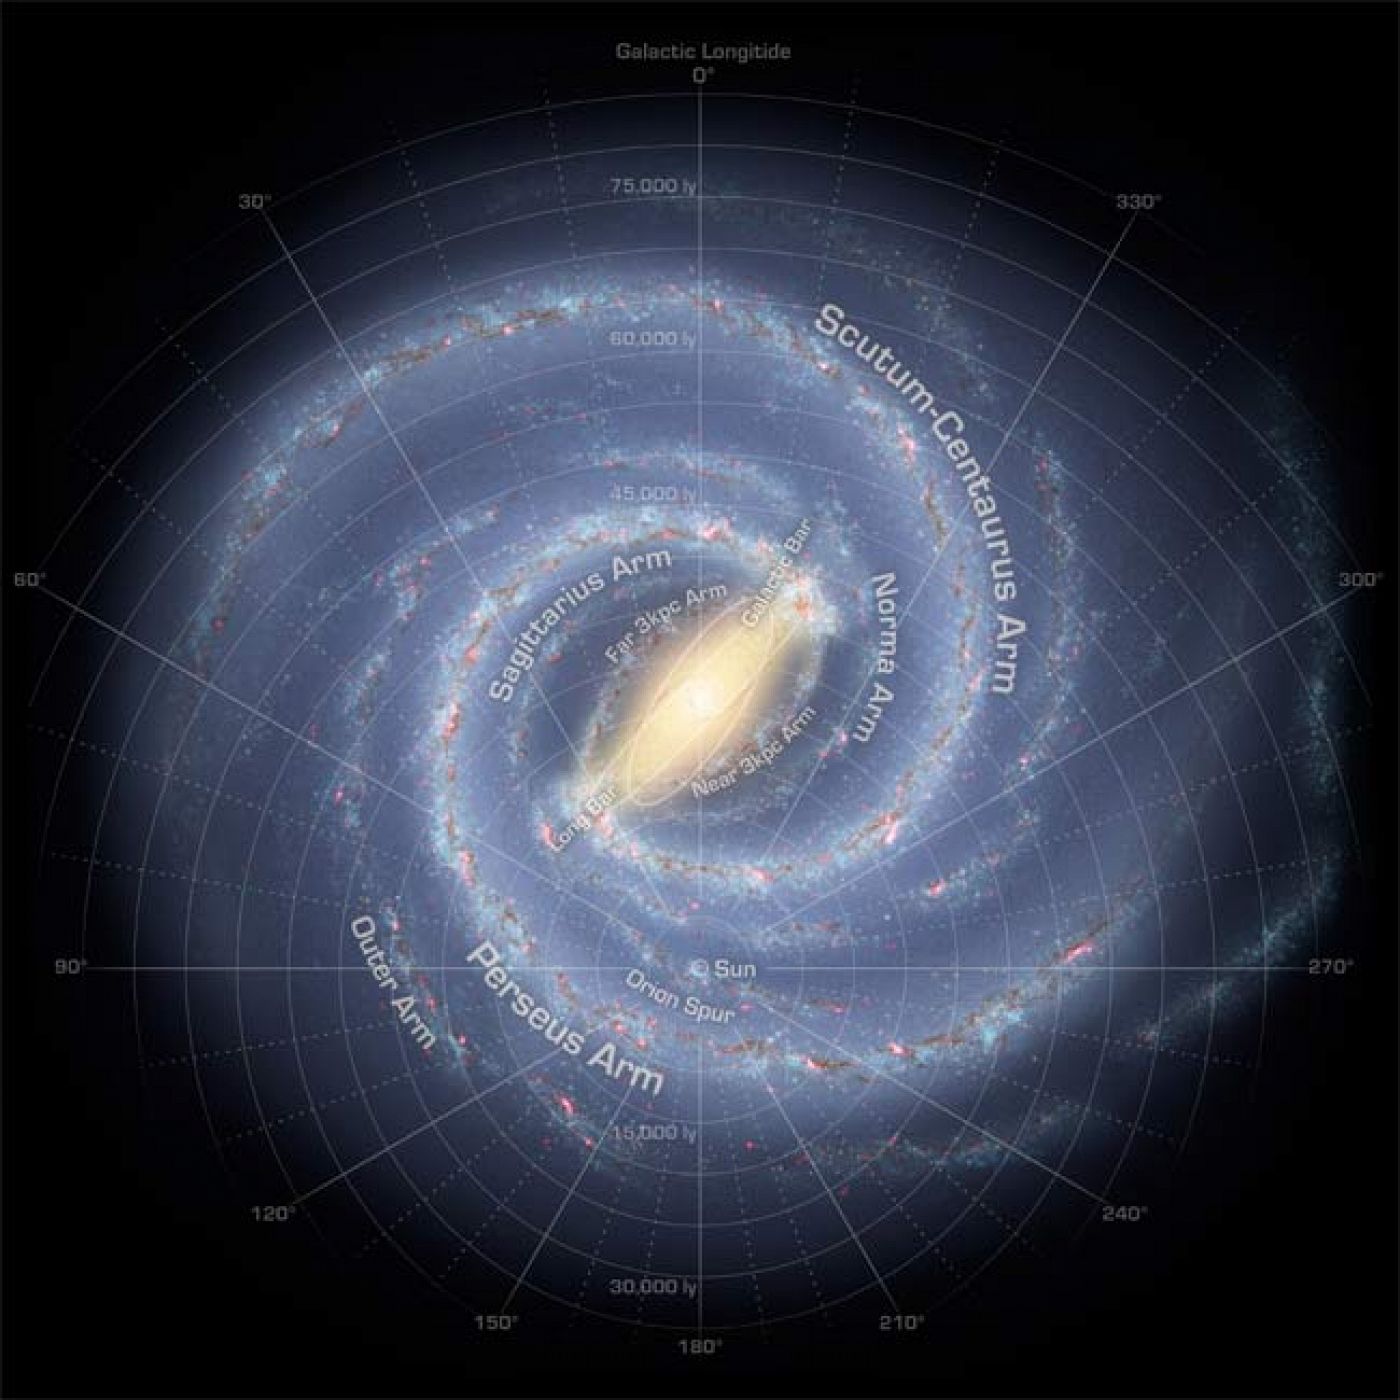 Imagen de la galaxia Vía Láctea tomada con infrarrojos por el telescopio Spitzer de la NASA.